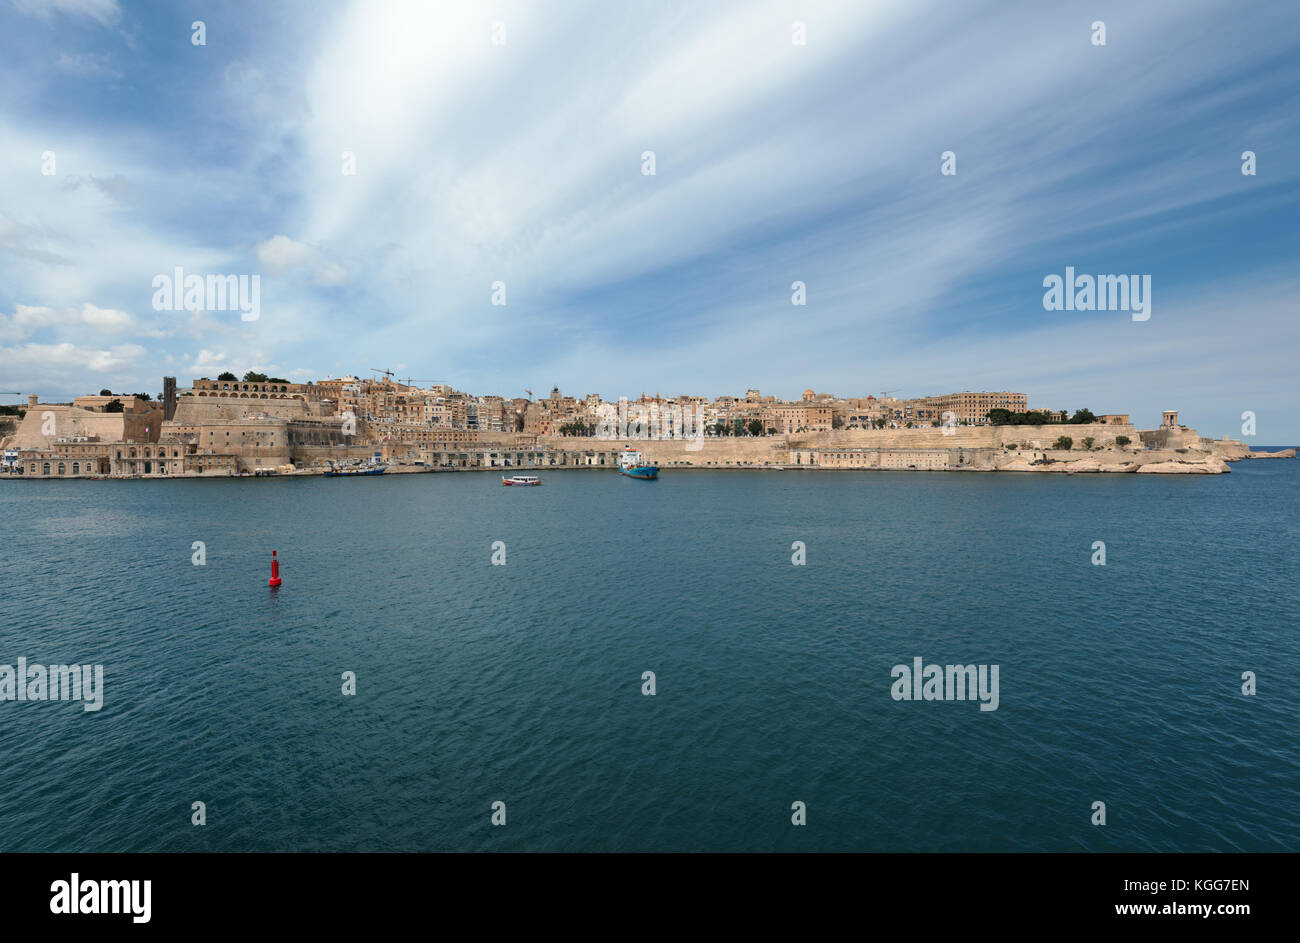 Valletta (Malta). View from Saint Angelo Stock Photo